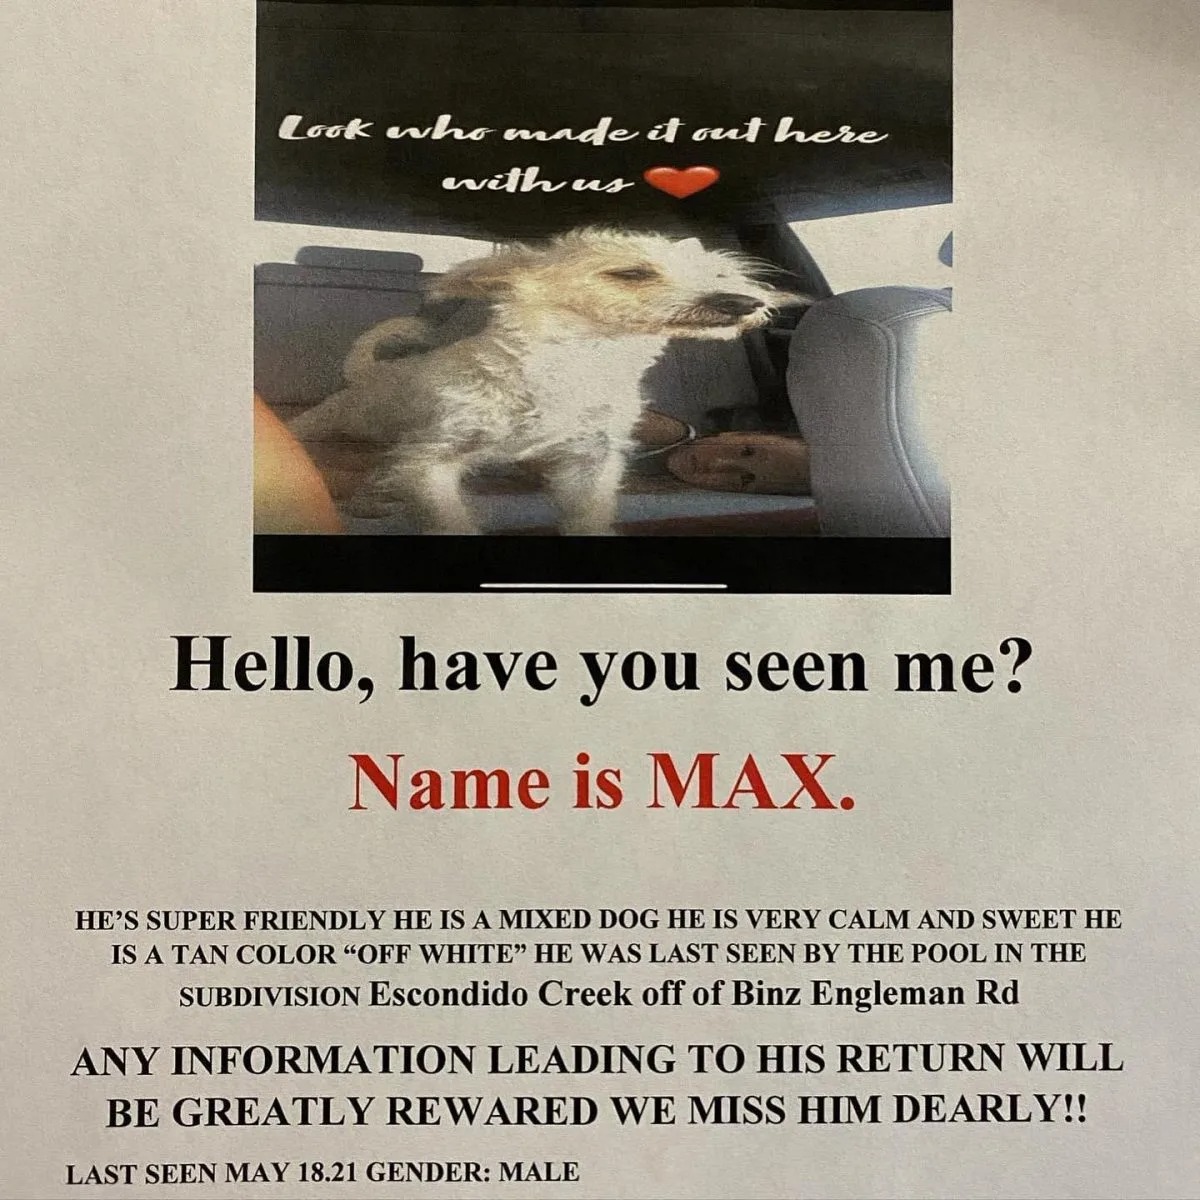 Anzeige für vermissten Hund